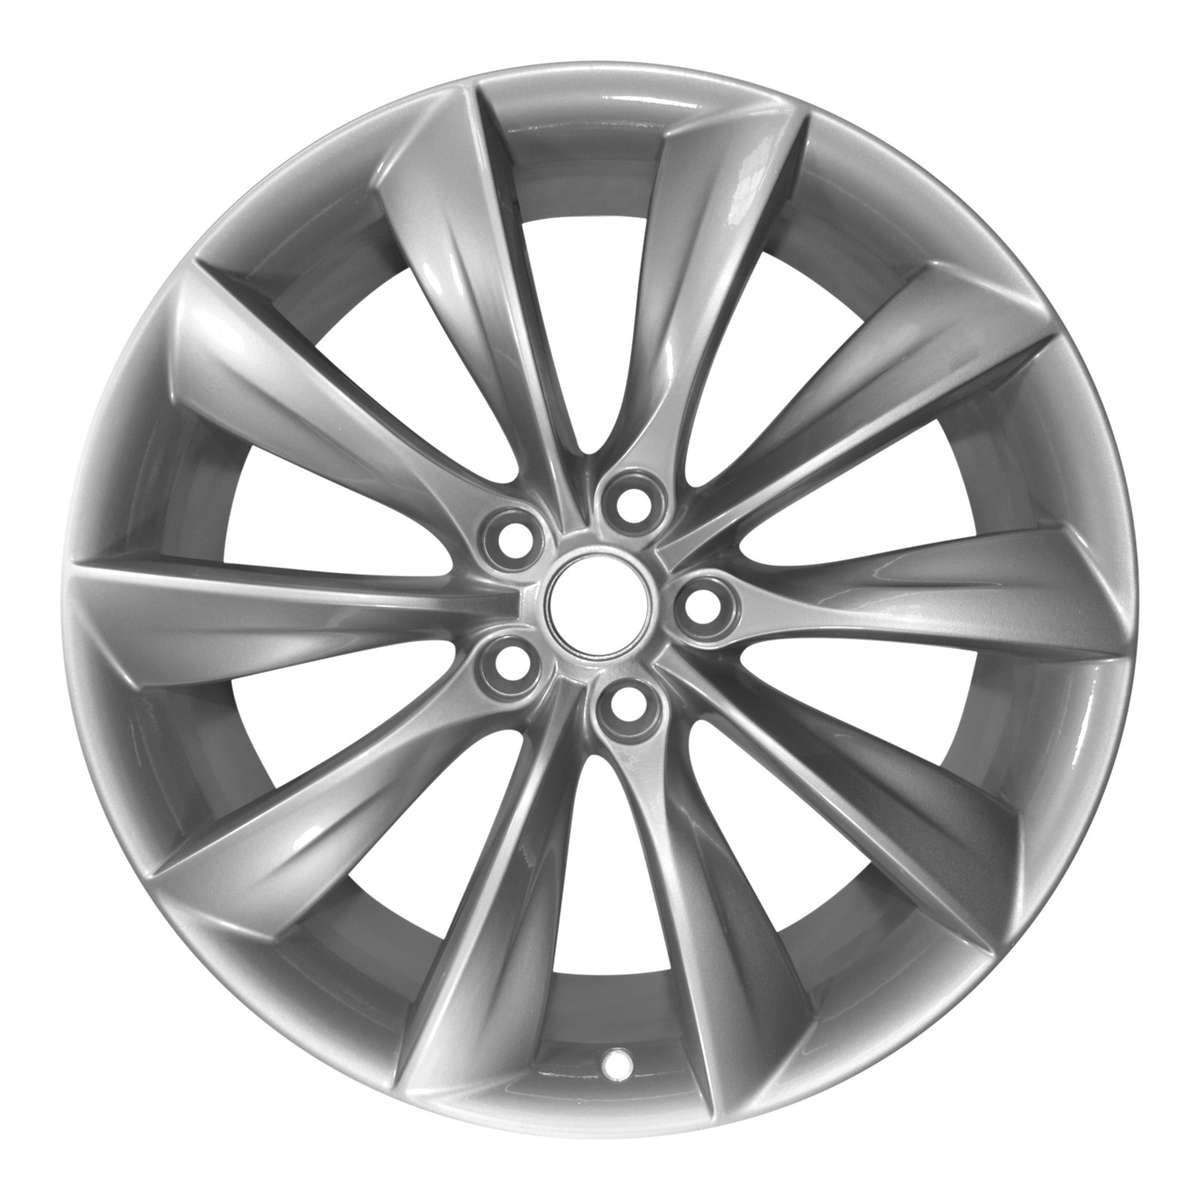 2013 Tesla Model S 21" Rear OEM Wheel Rim W97095S